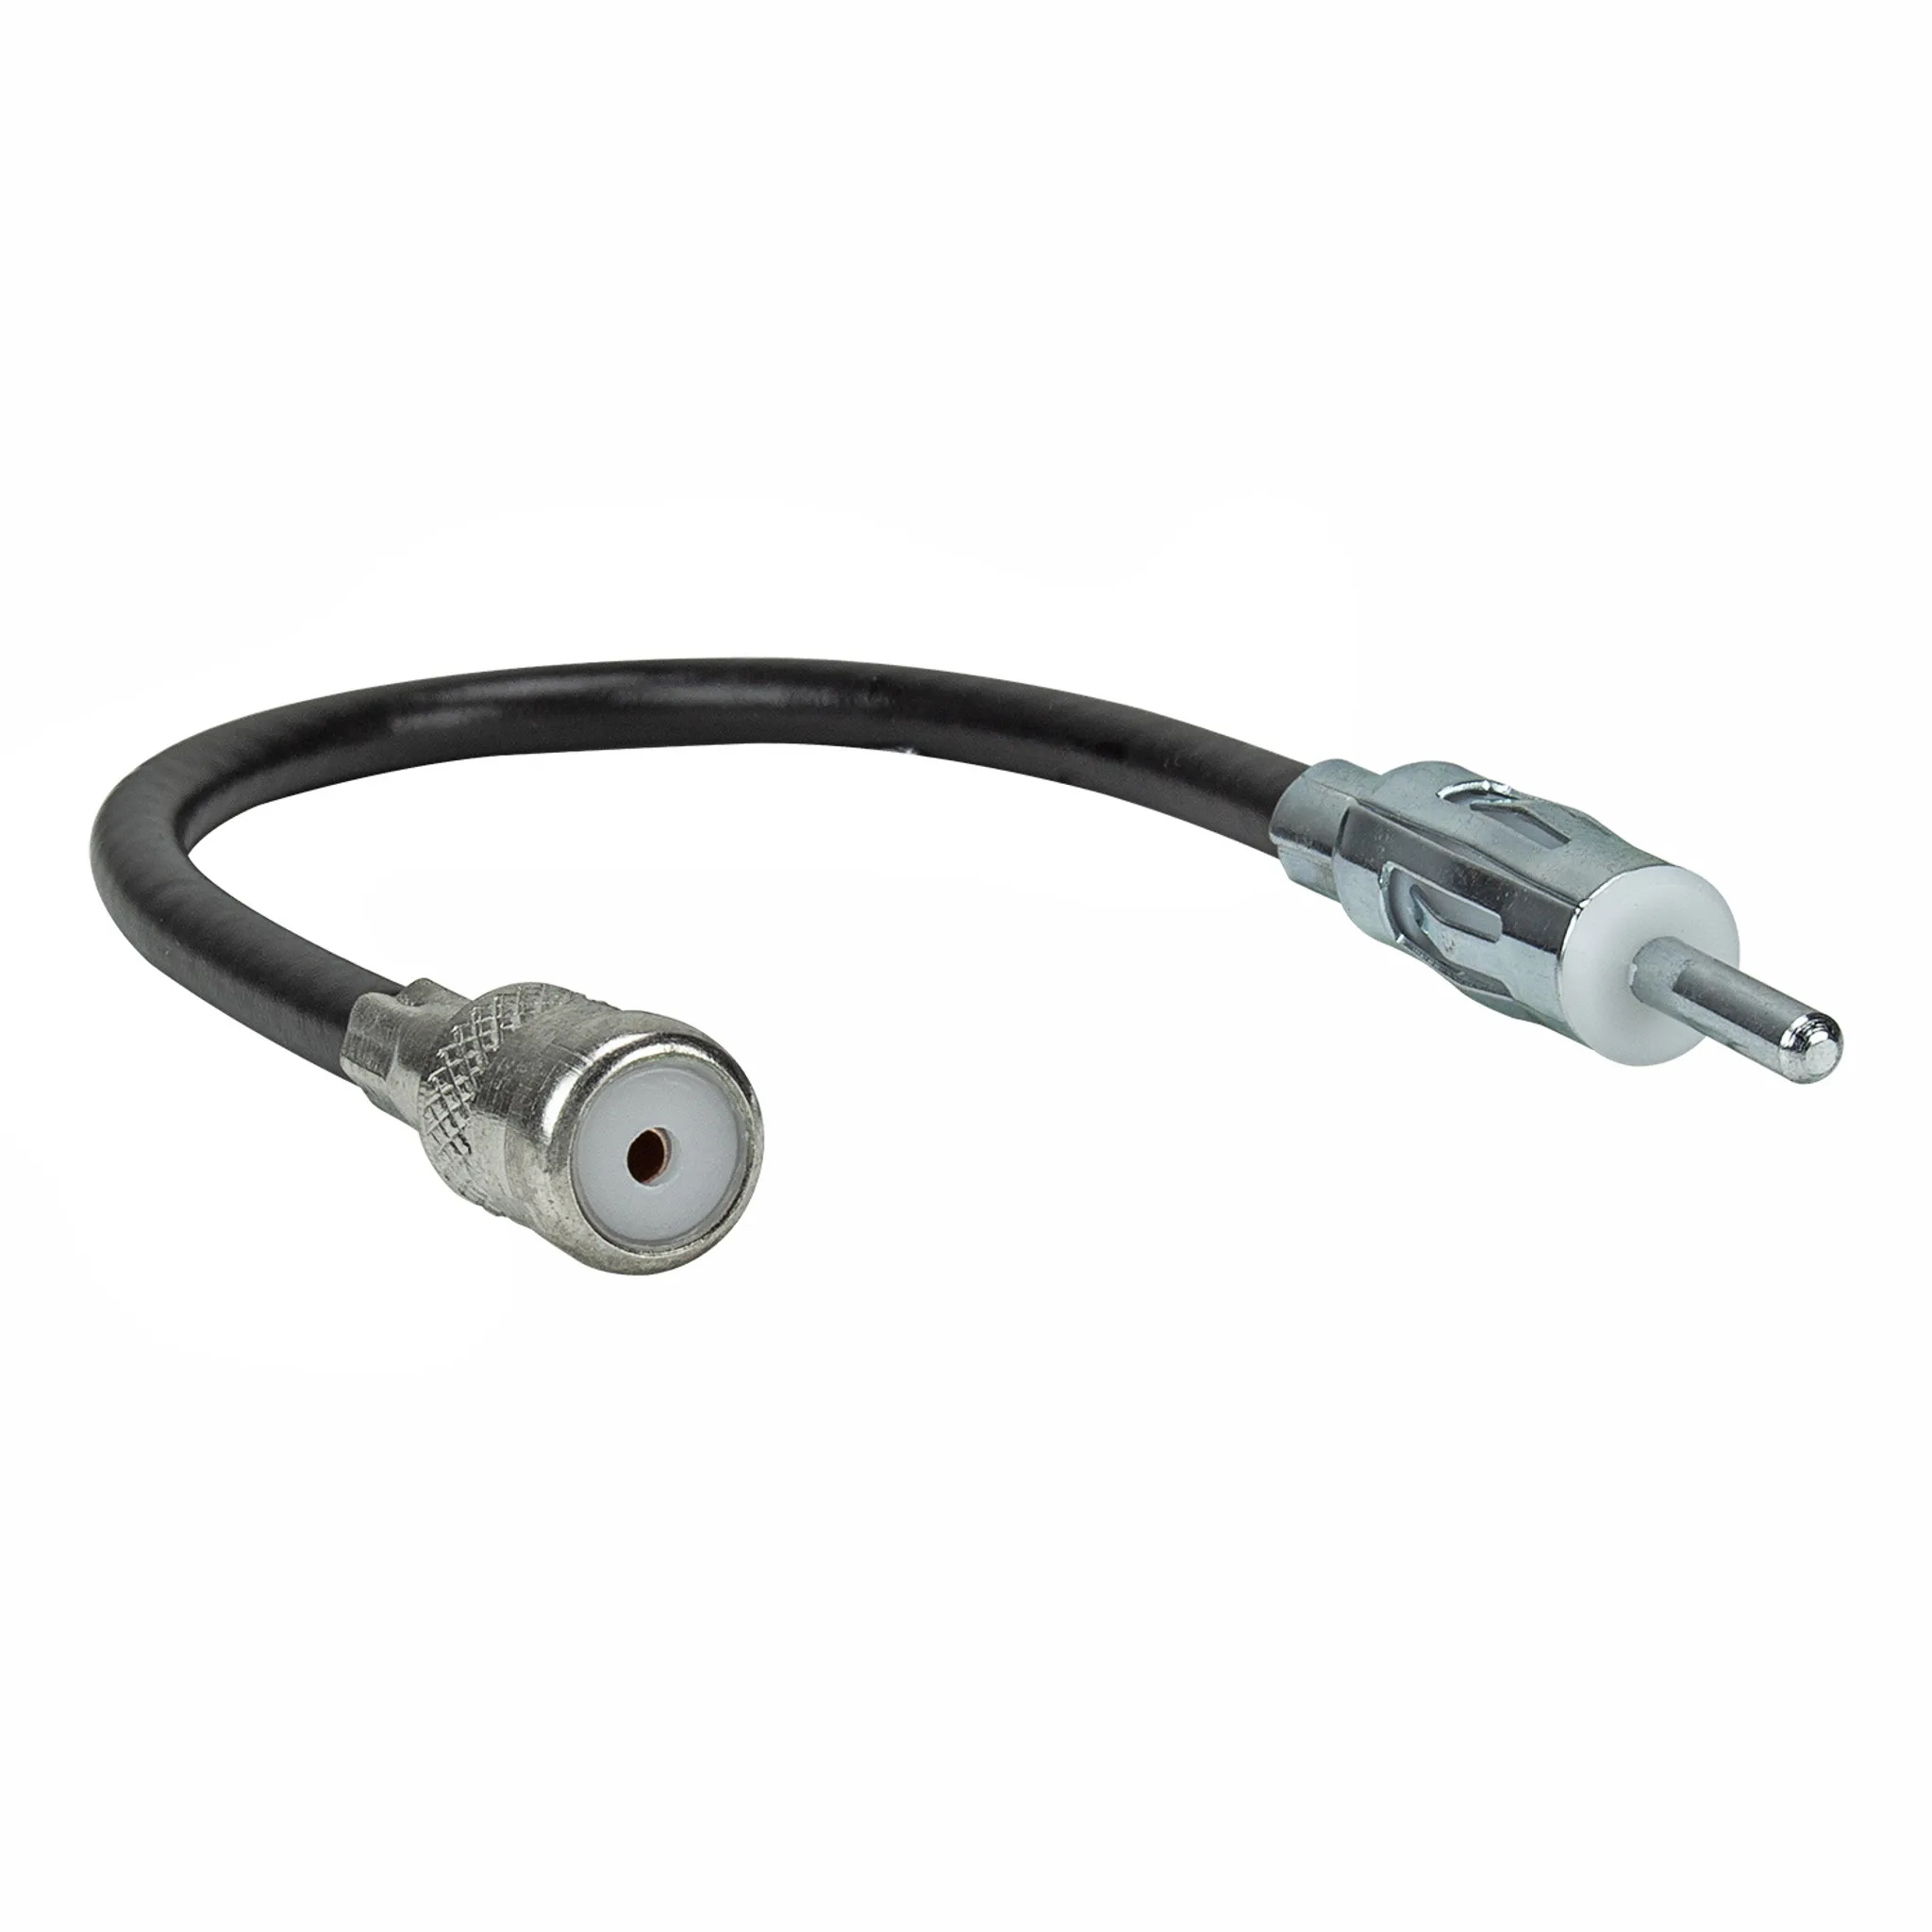 Kfz Adapter Stecker für Auto Radio Antennenadapter DIN ISO Buchse Stecker  4016260083000